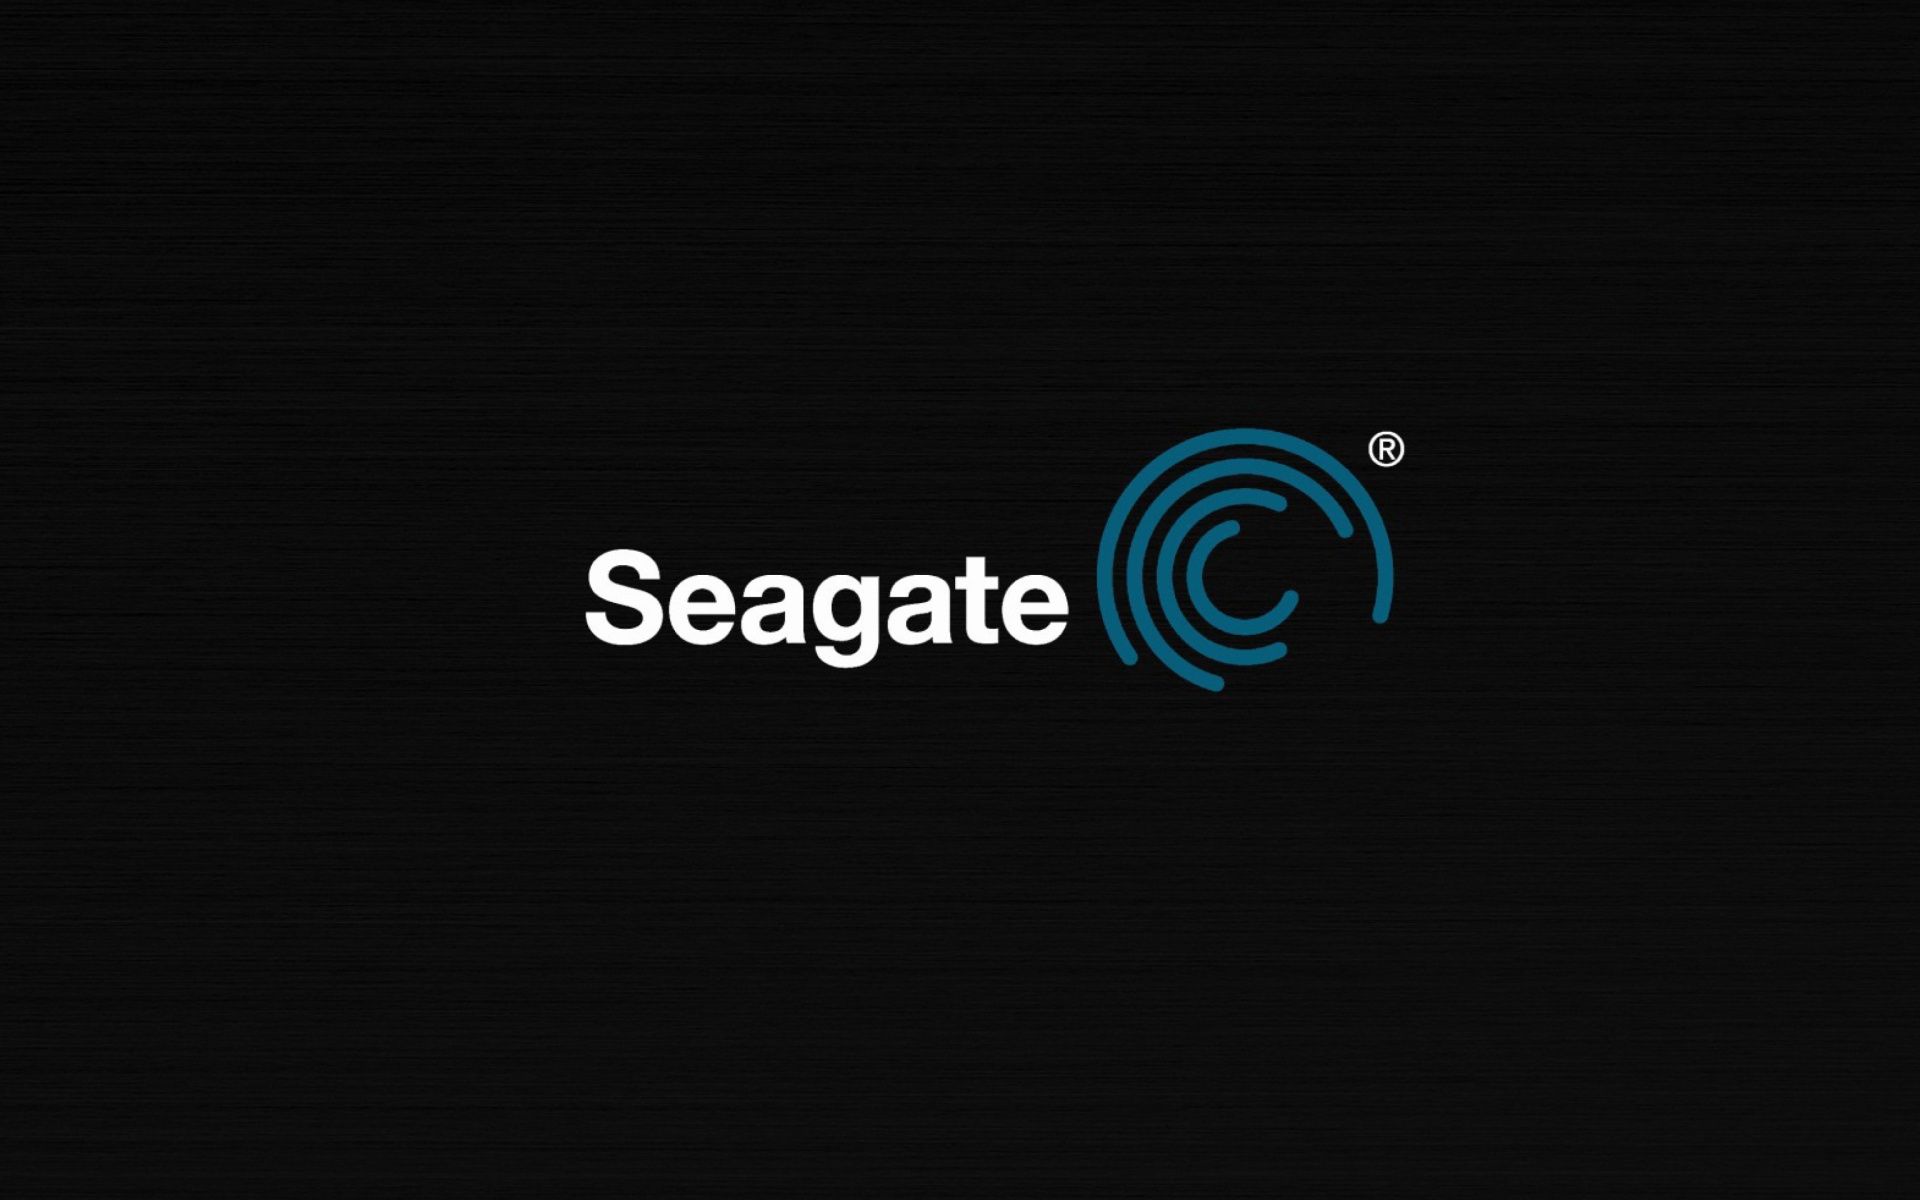 Seagate Wallpaper Free Seagate Background